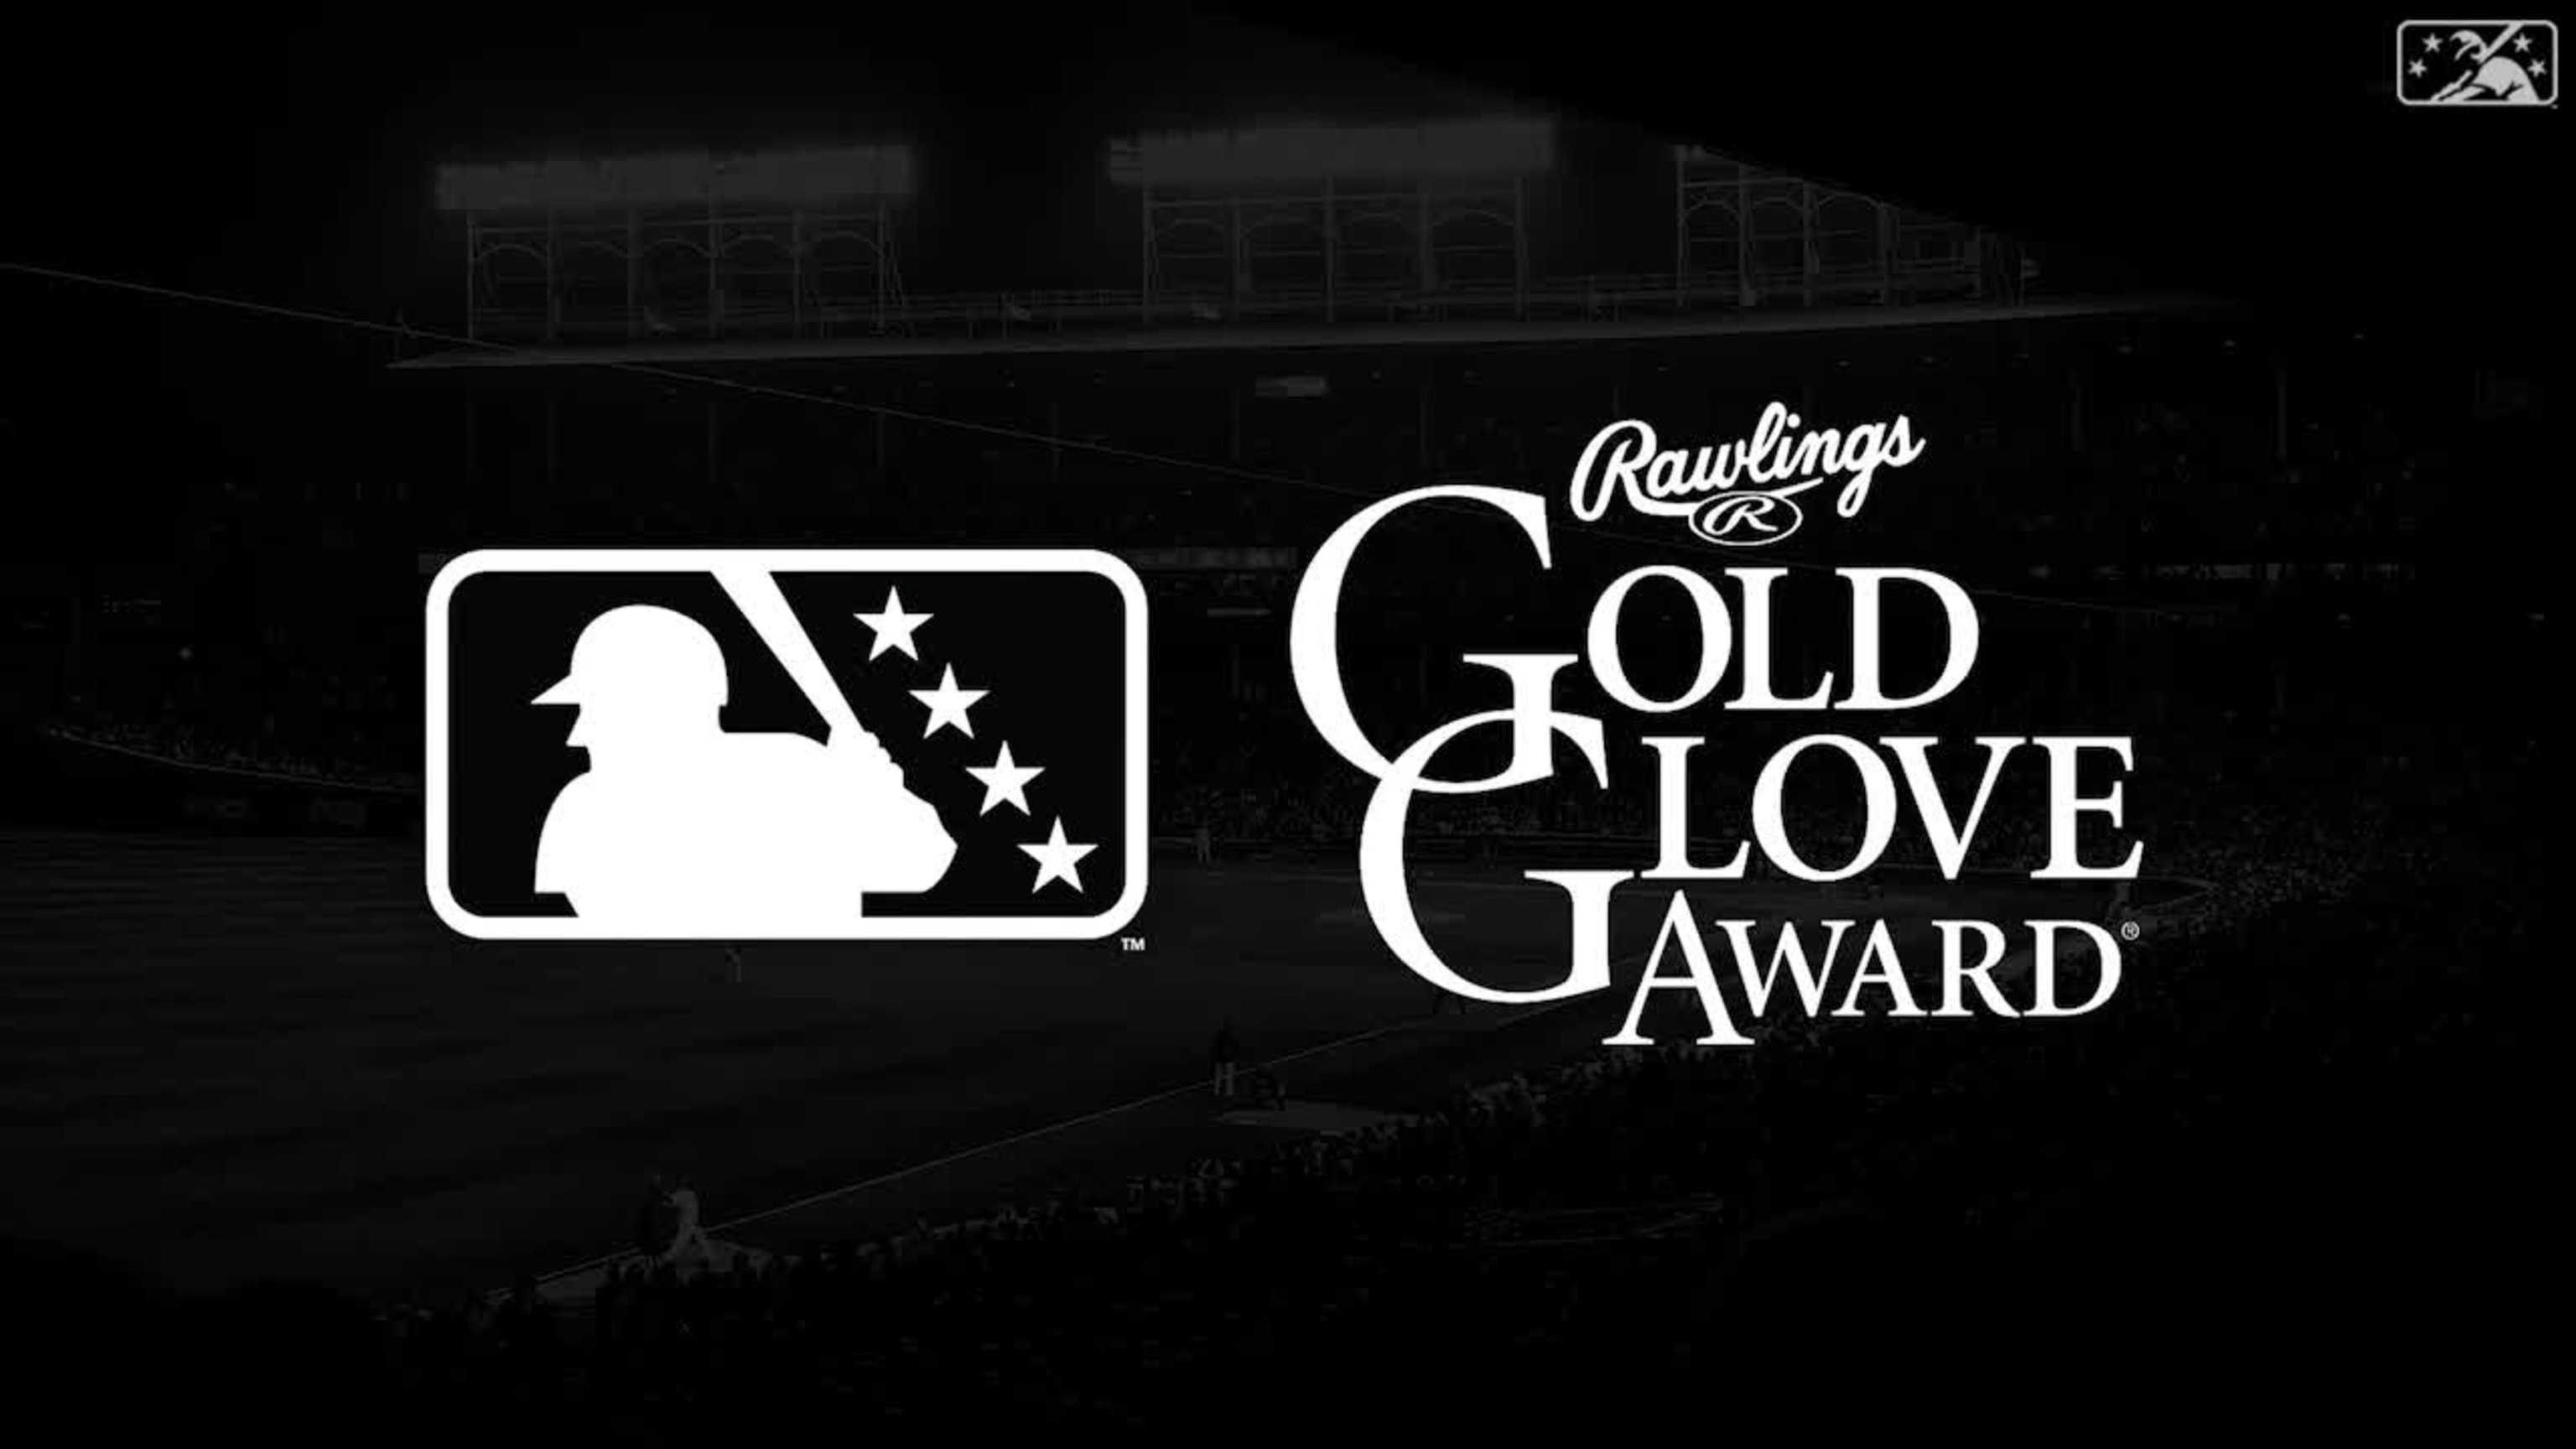 Rawlings Gold Glove Team Award, Learn More Here